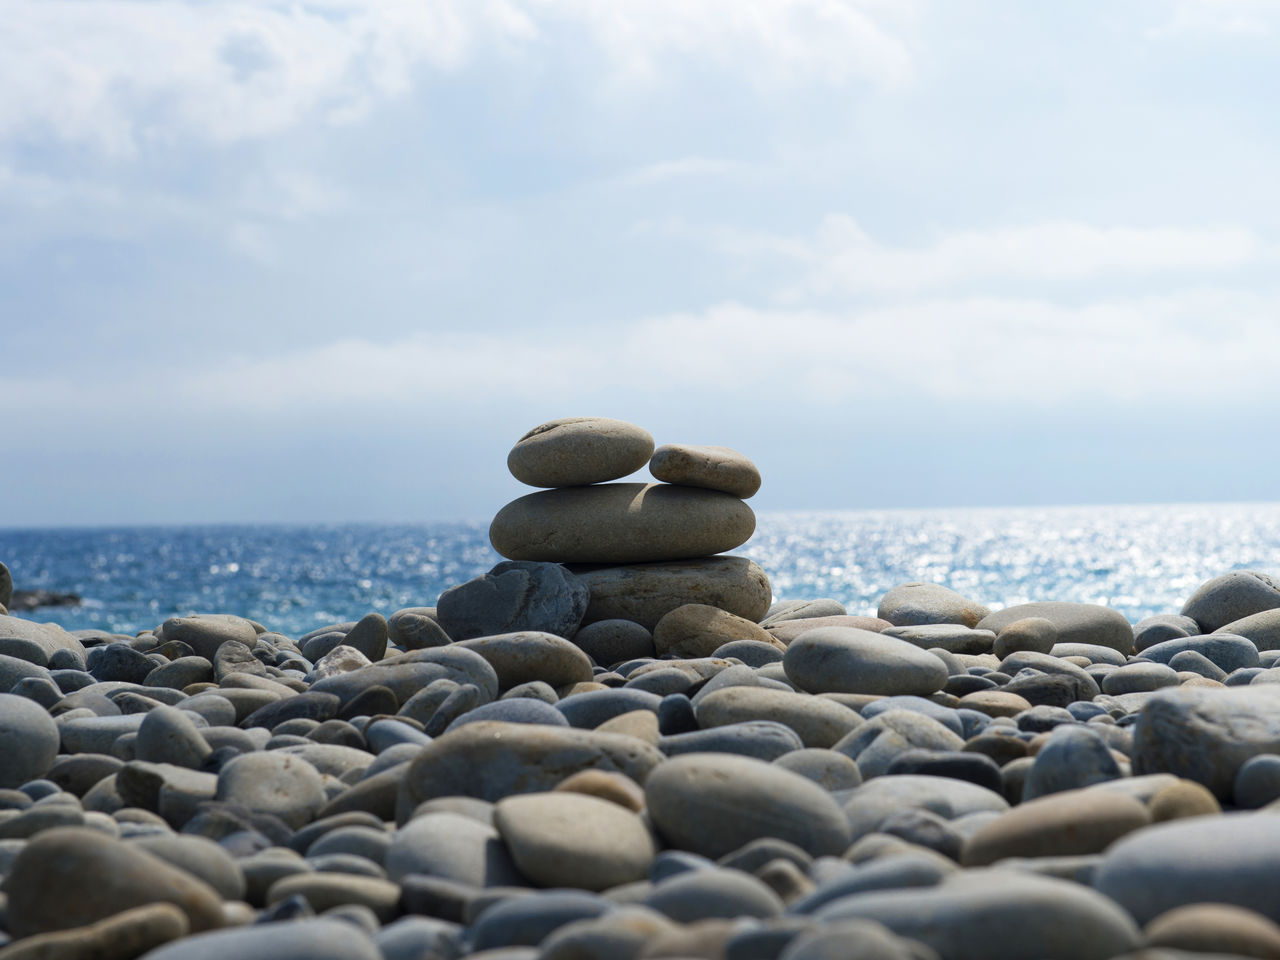 بعض الحجارة المستديرة الرائعة من شاطئ هونوهوشي.